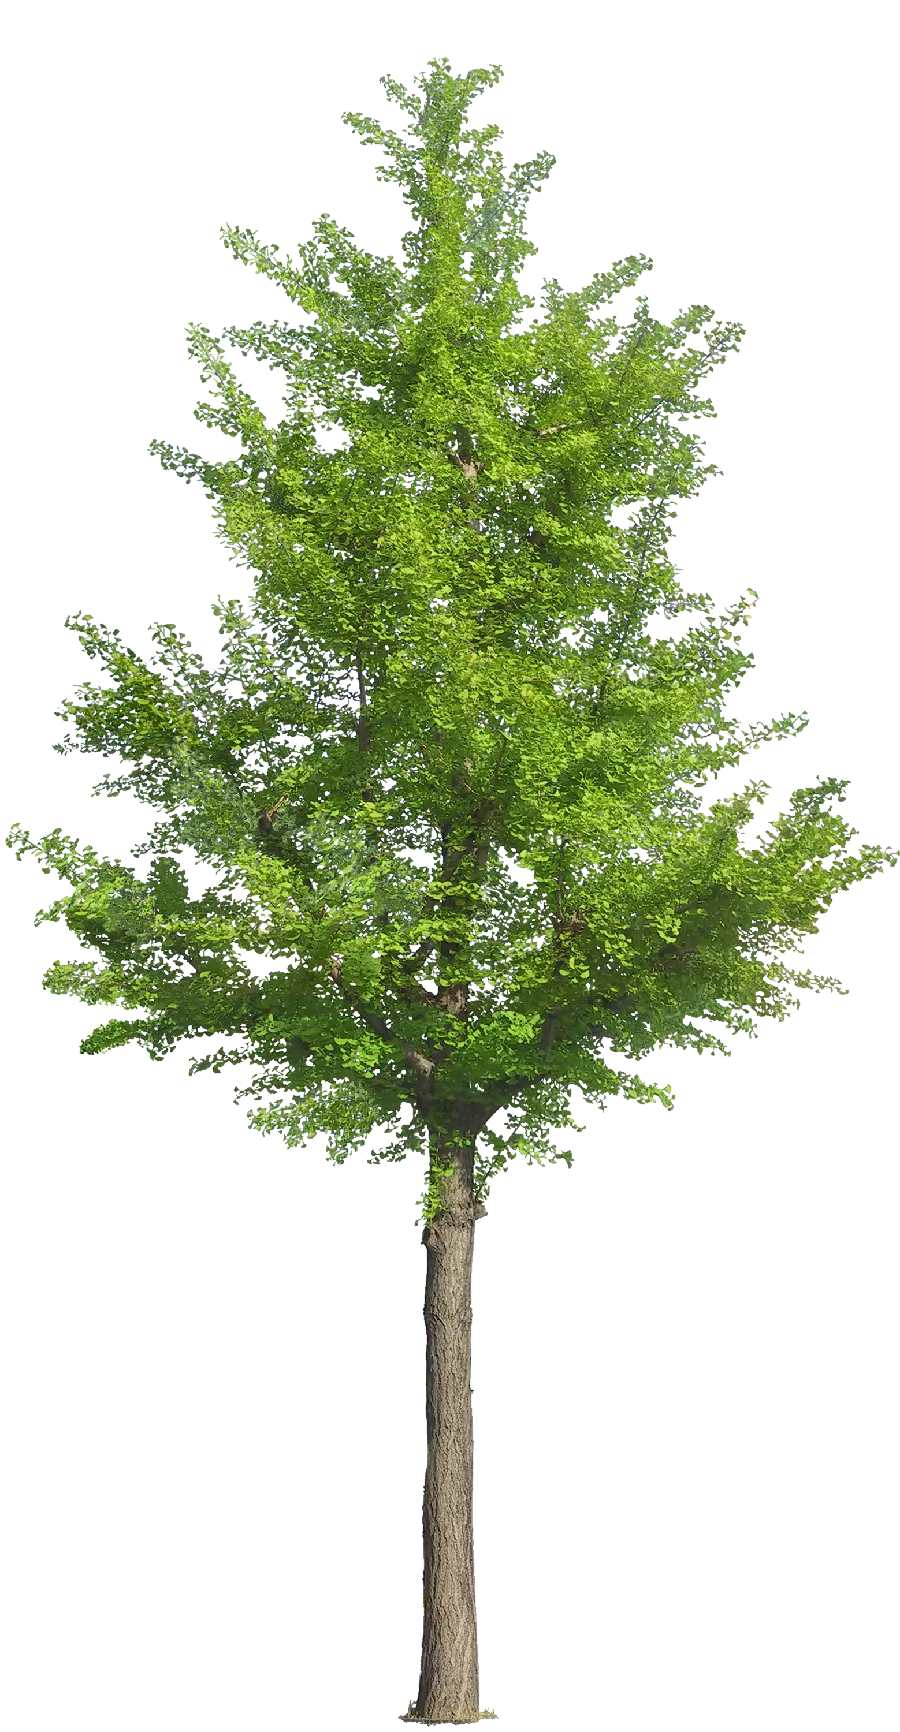 تصویر کامپیوتری از درخت با کیفیت فول اچ دی و زمینه پرده سبز